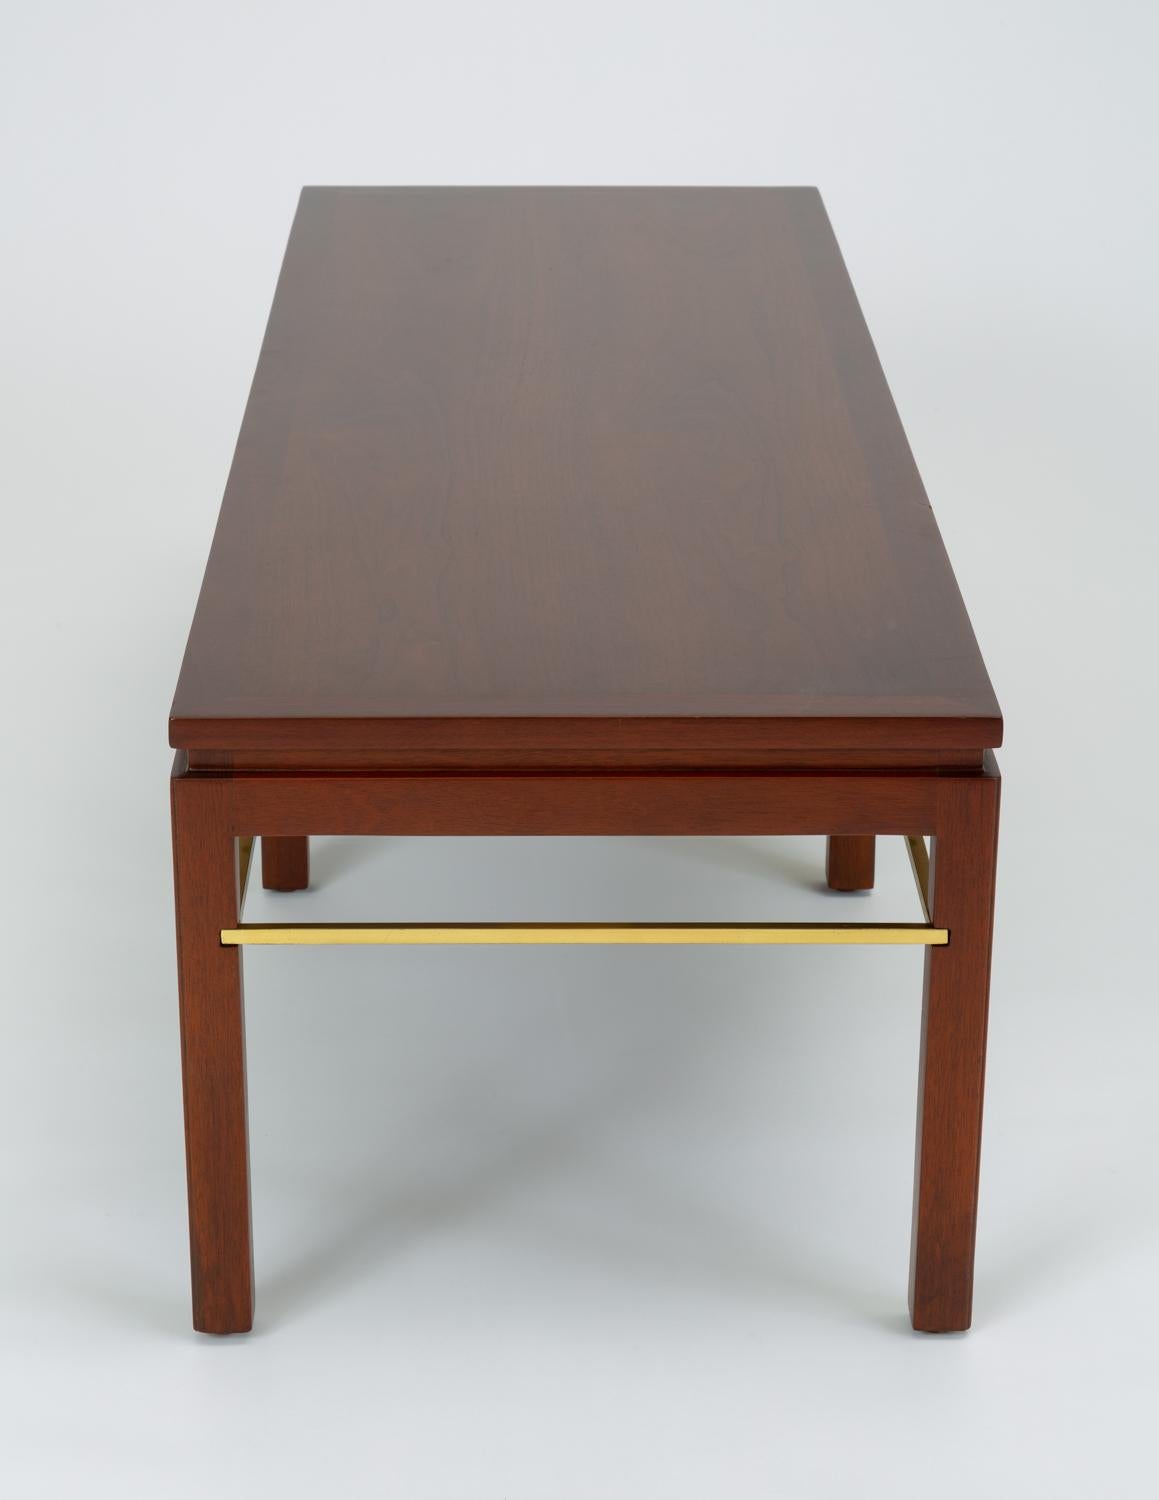 Dunbar Model 313 Coffee Table or Bench by Edward Wormley 5